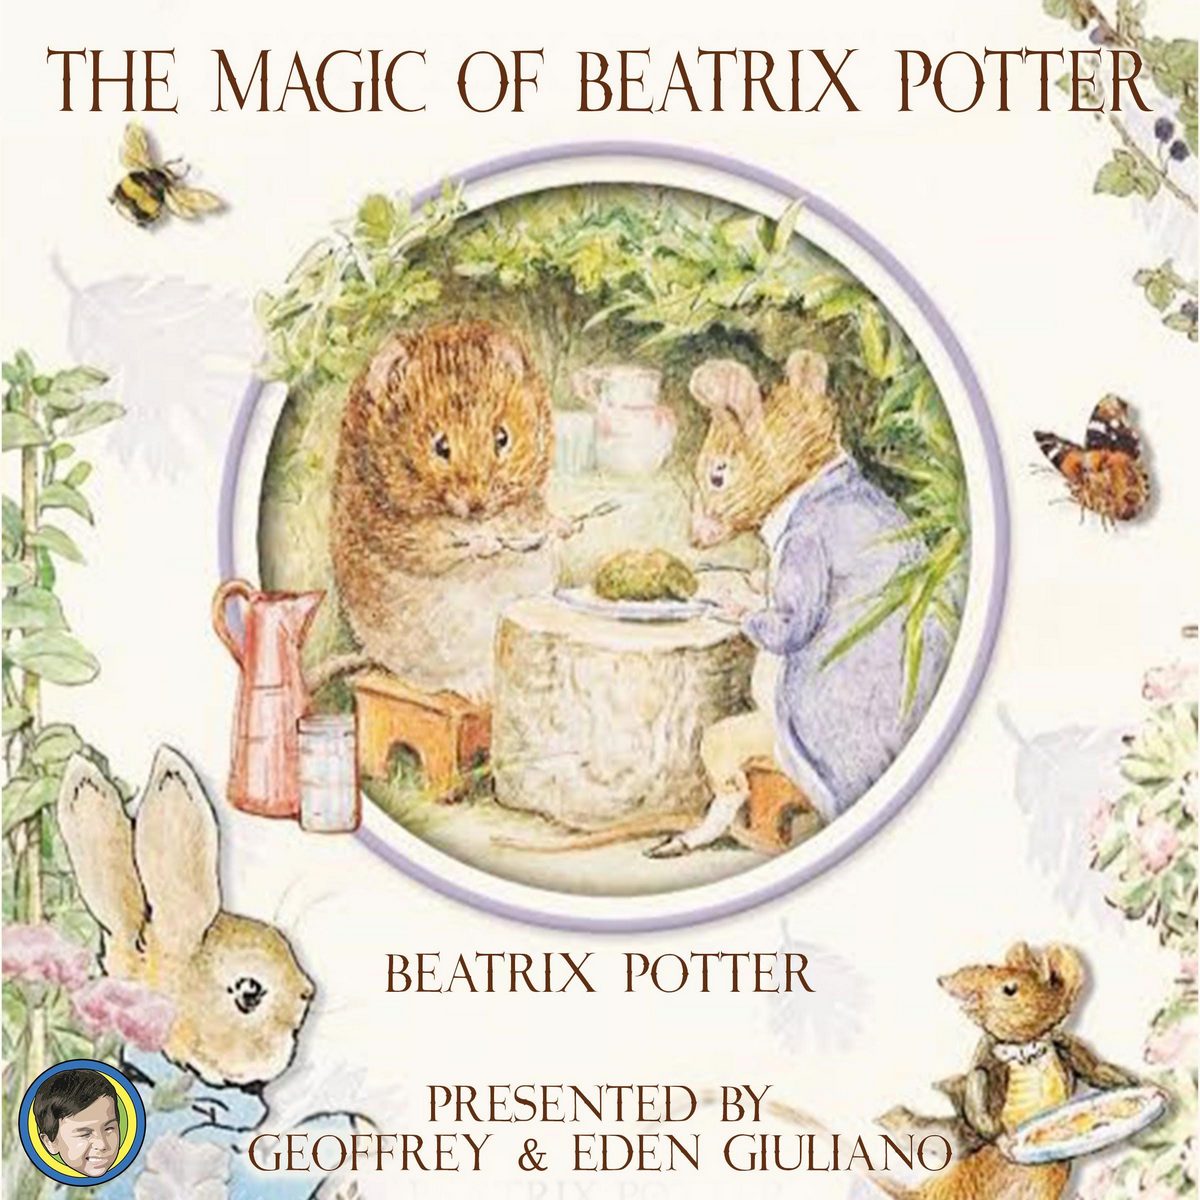 The Magic of Beatrix Potter